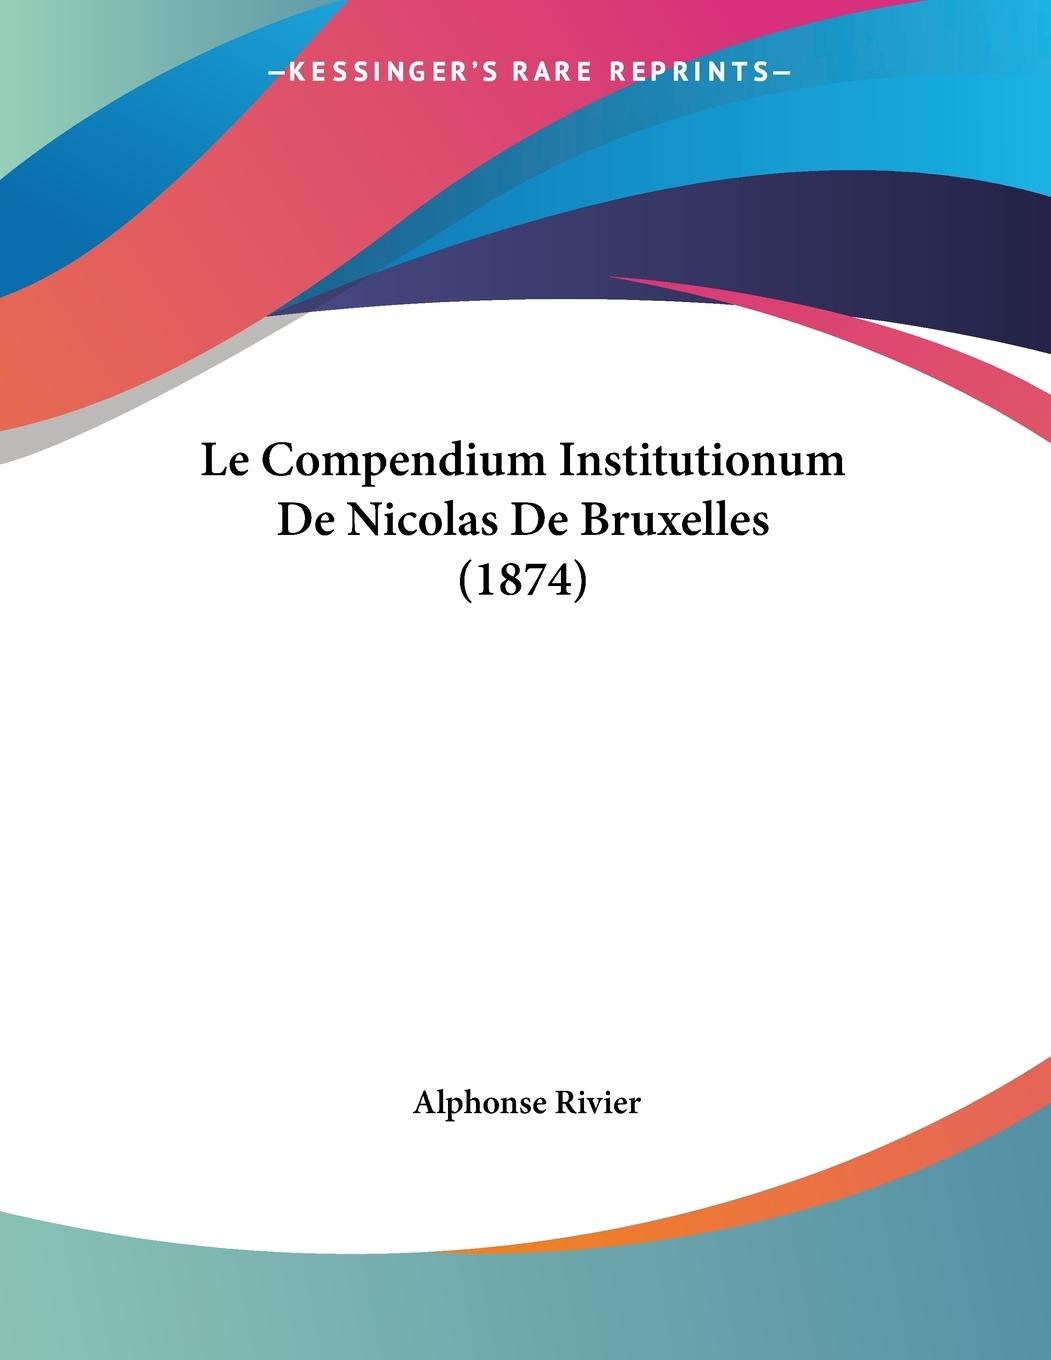 Le Compendium Institutionum De Nicolas De Bruxelles (1874) - Rivier, Alphonse